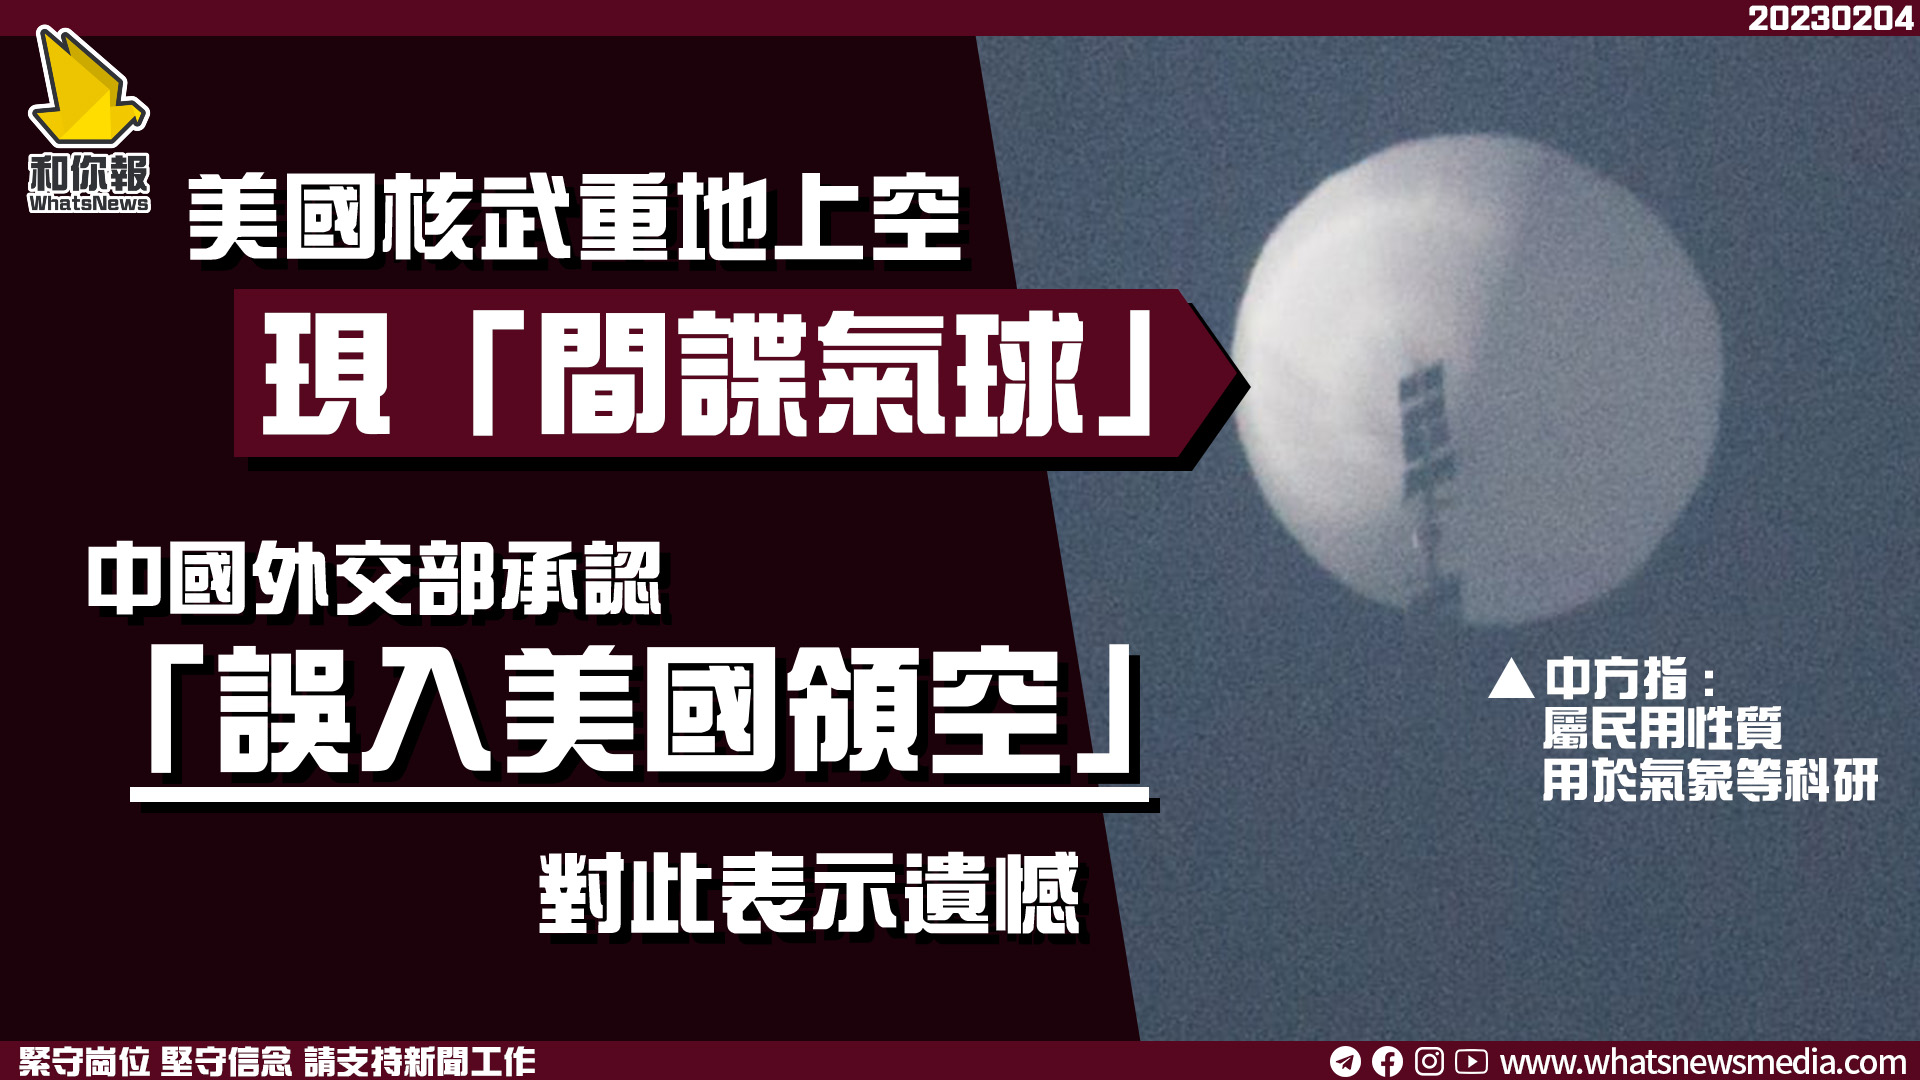 美國核武重地上空現「間諜氣球」  中國外交部承認「誤入美國領空」